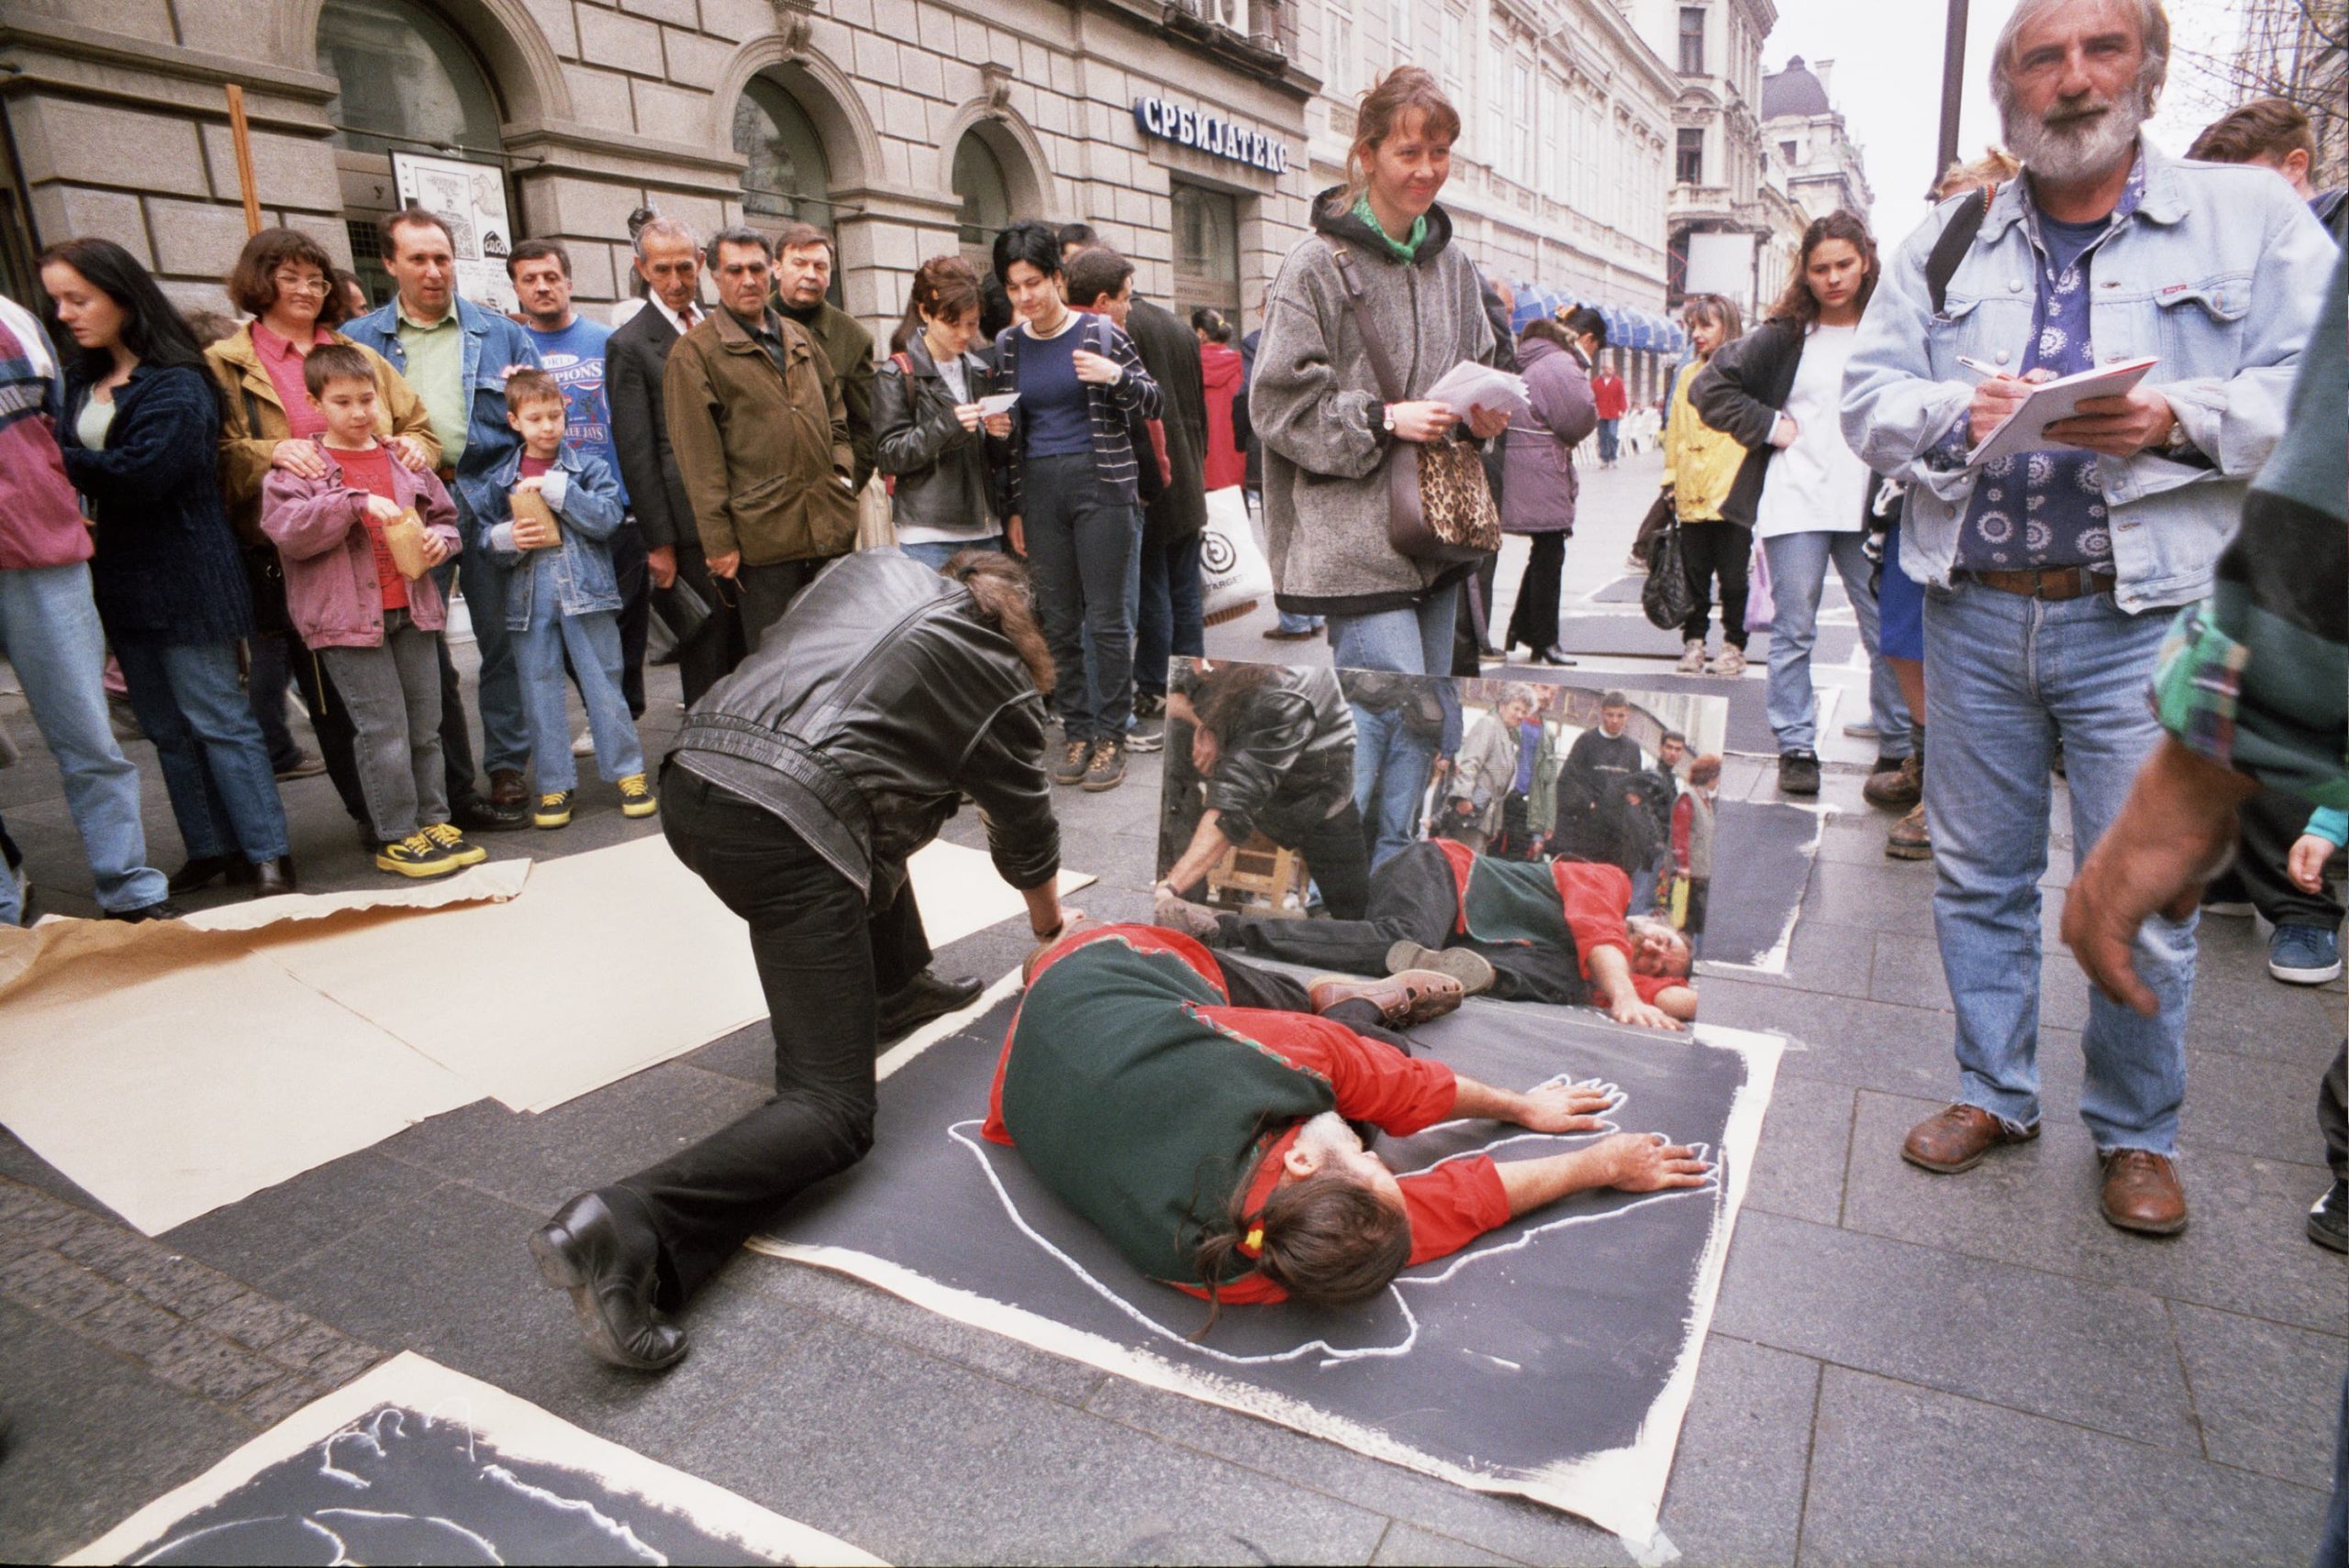 Performans rekonstrukcije zločina gde su na ulici ljudi koji leže na crnom papiru i oko njih opcrtavaju belom kredom